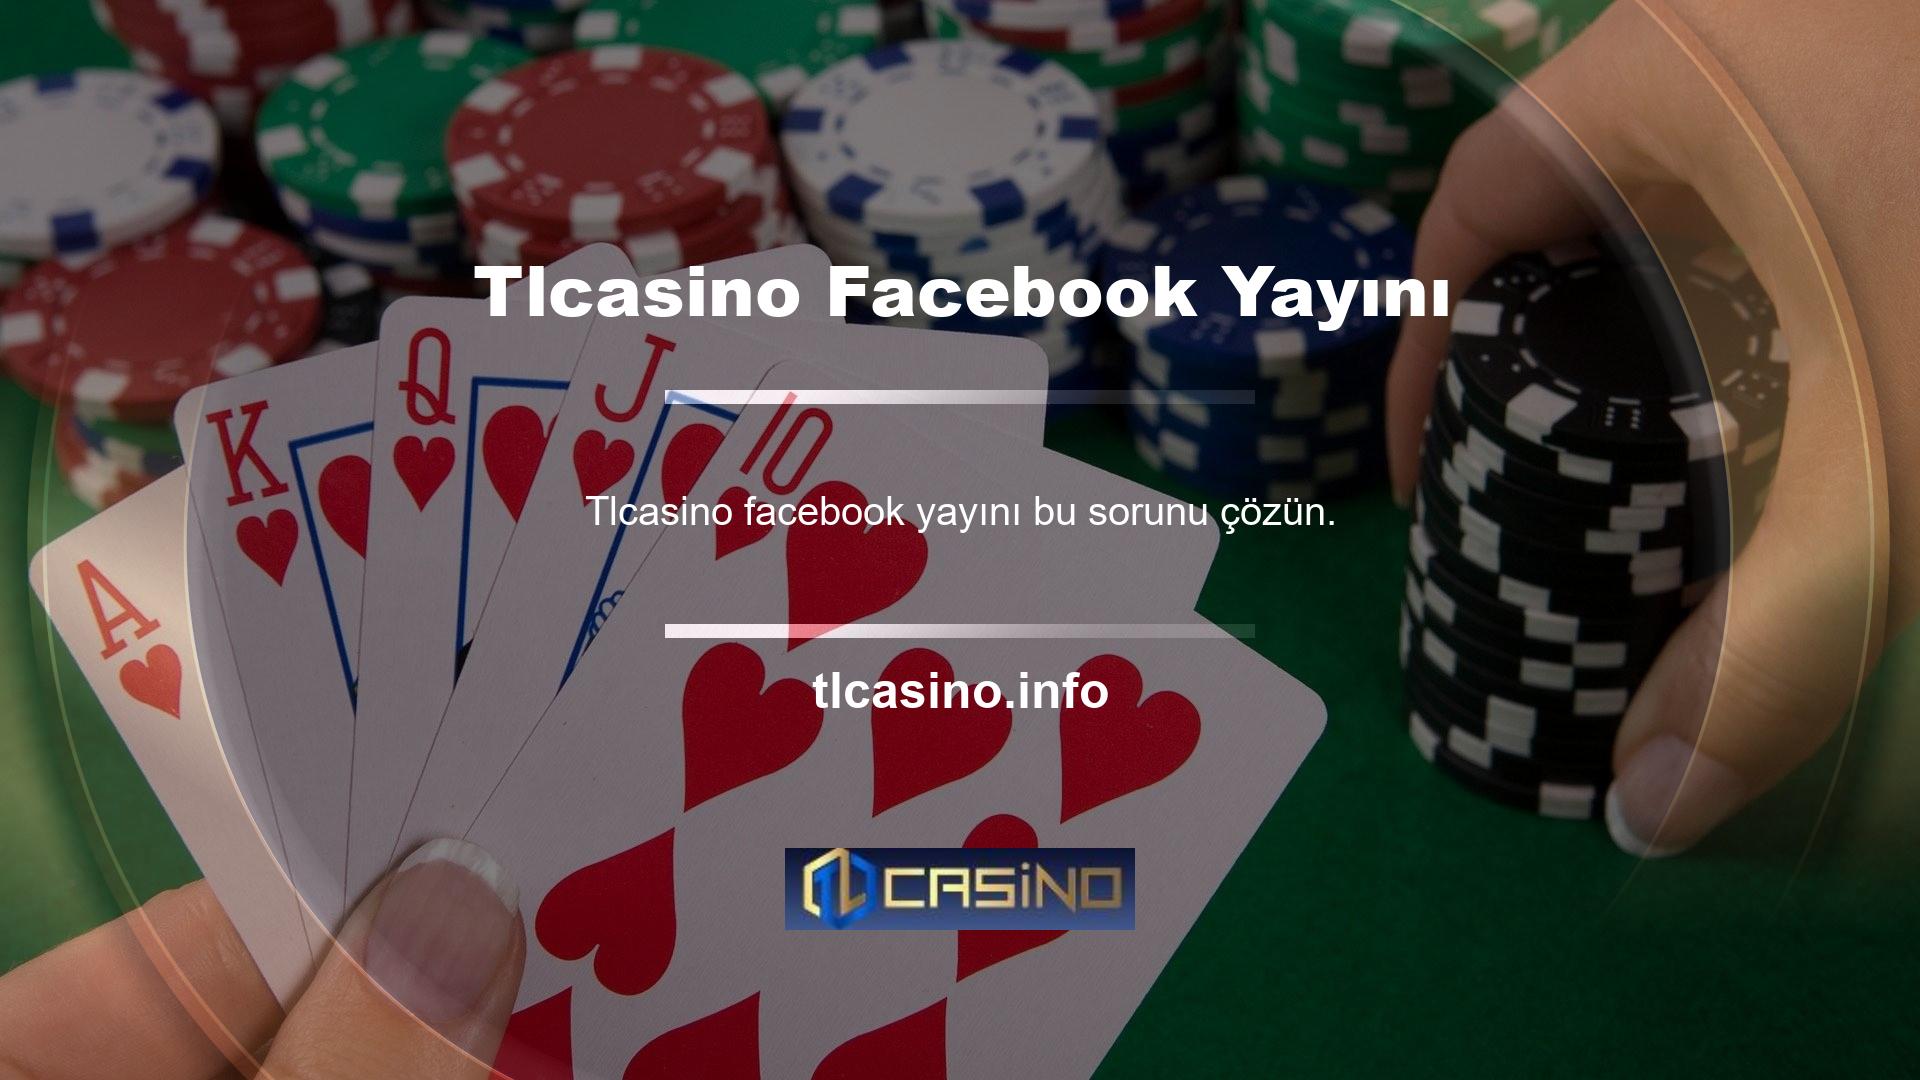 Hepimizin bildiği gibi Tlcasino Facebook feed'i artık Türkiye'de ve çoğu Avrupa ülkesinde faaliyet gösteren ünlü bir sitedir